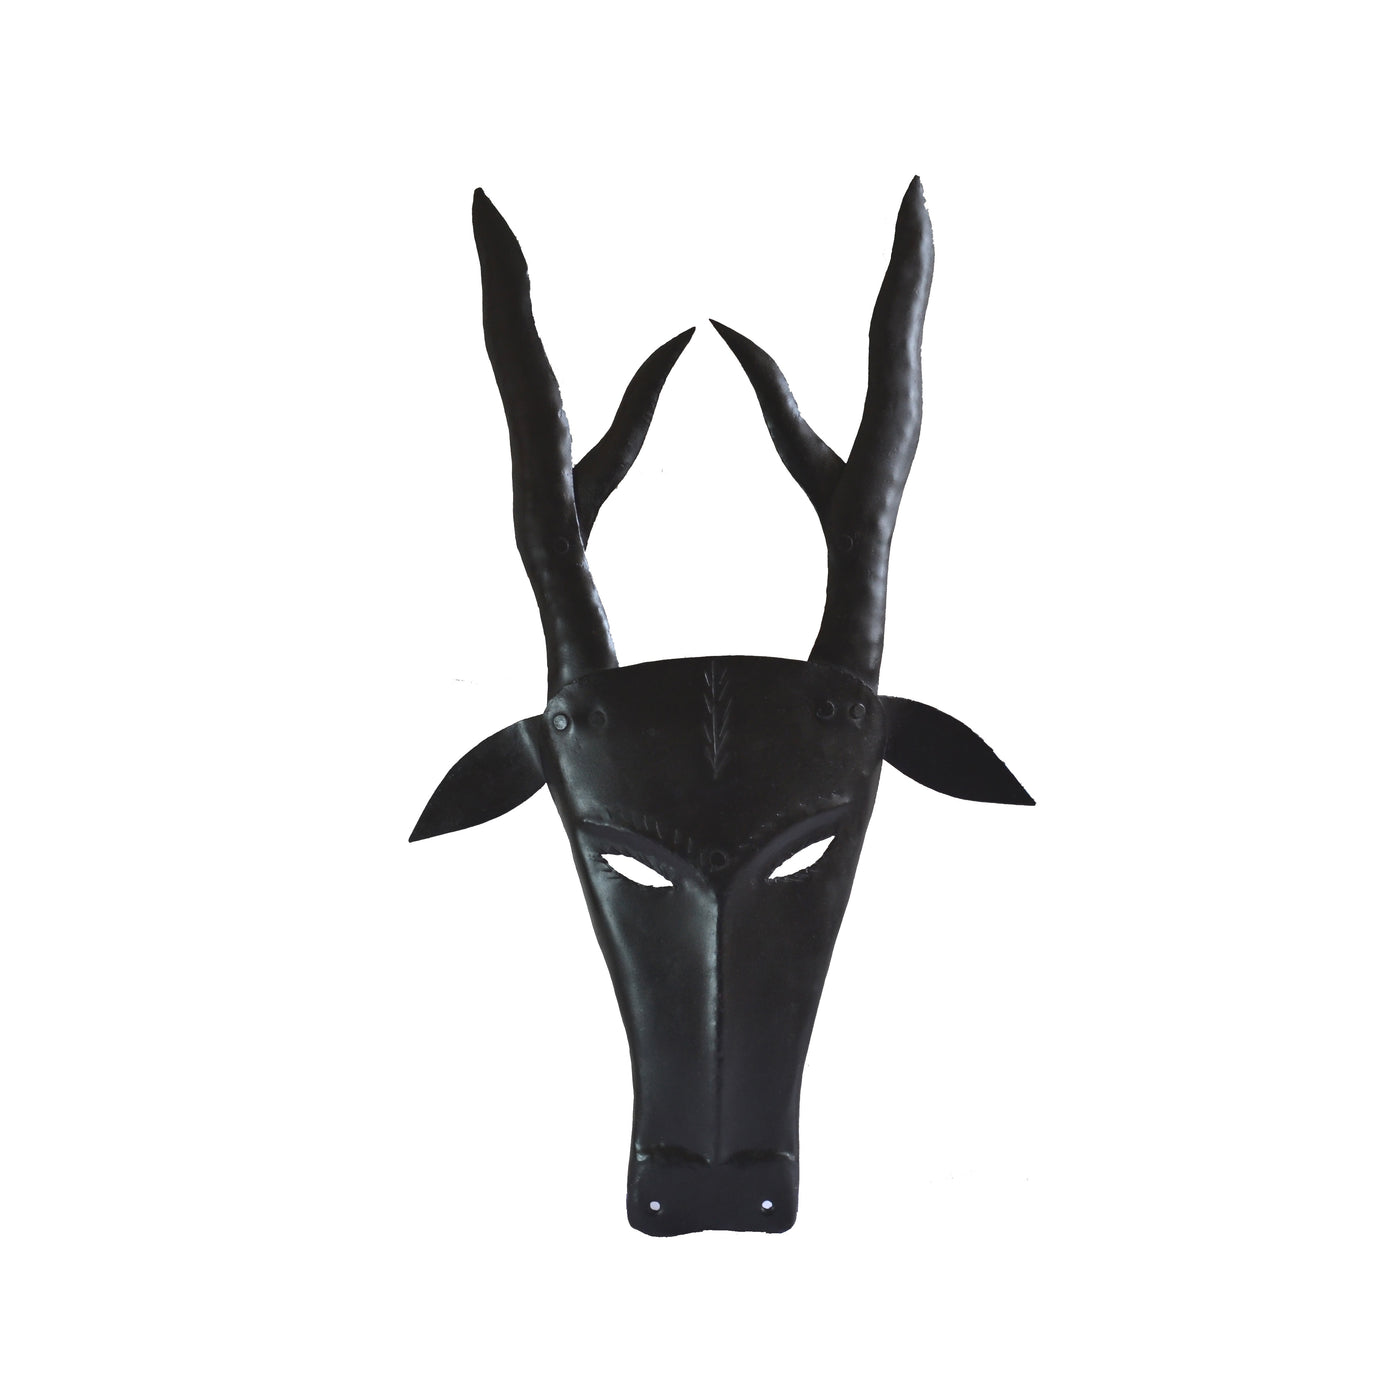 Chinhhari arts Wrought Iron  stag mask - Chinhhari Arts store